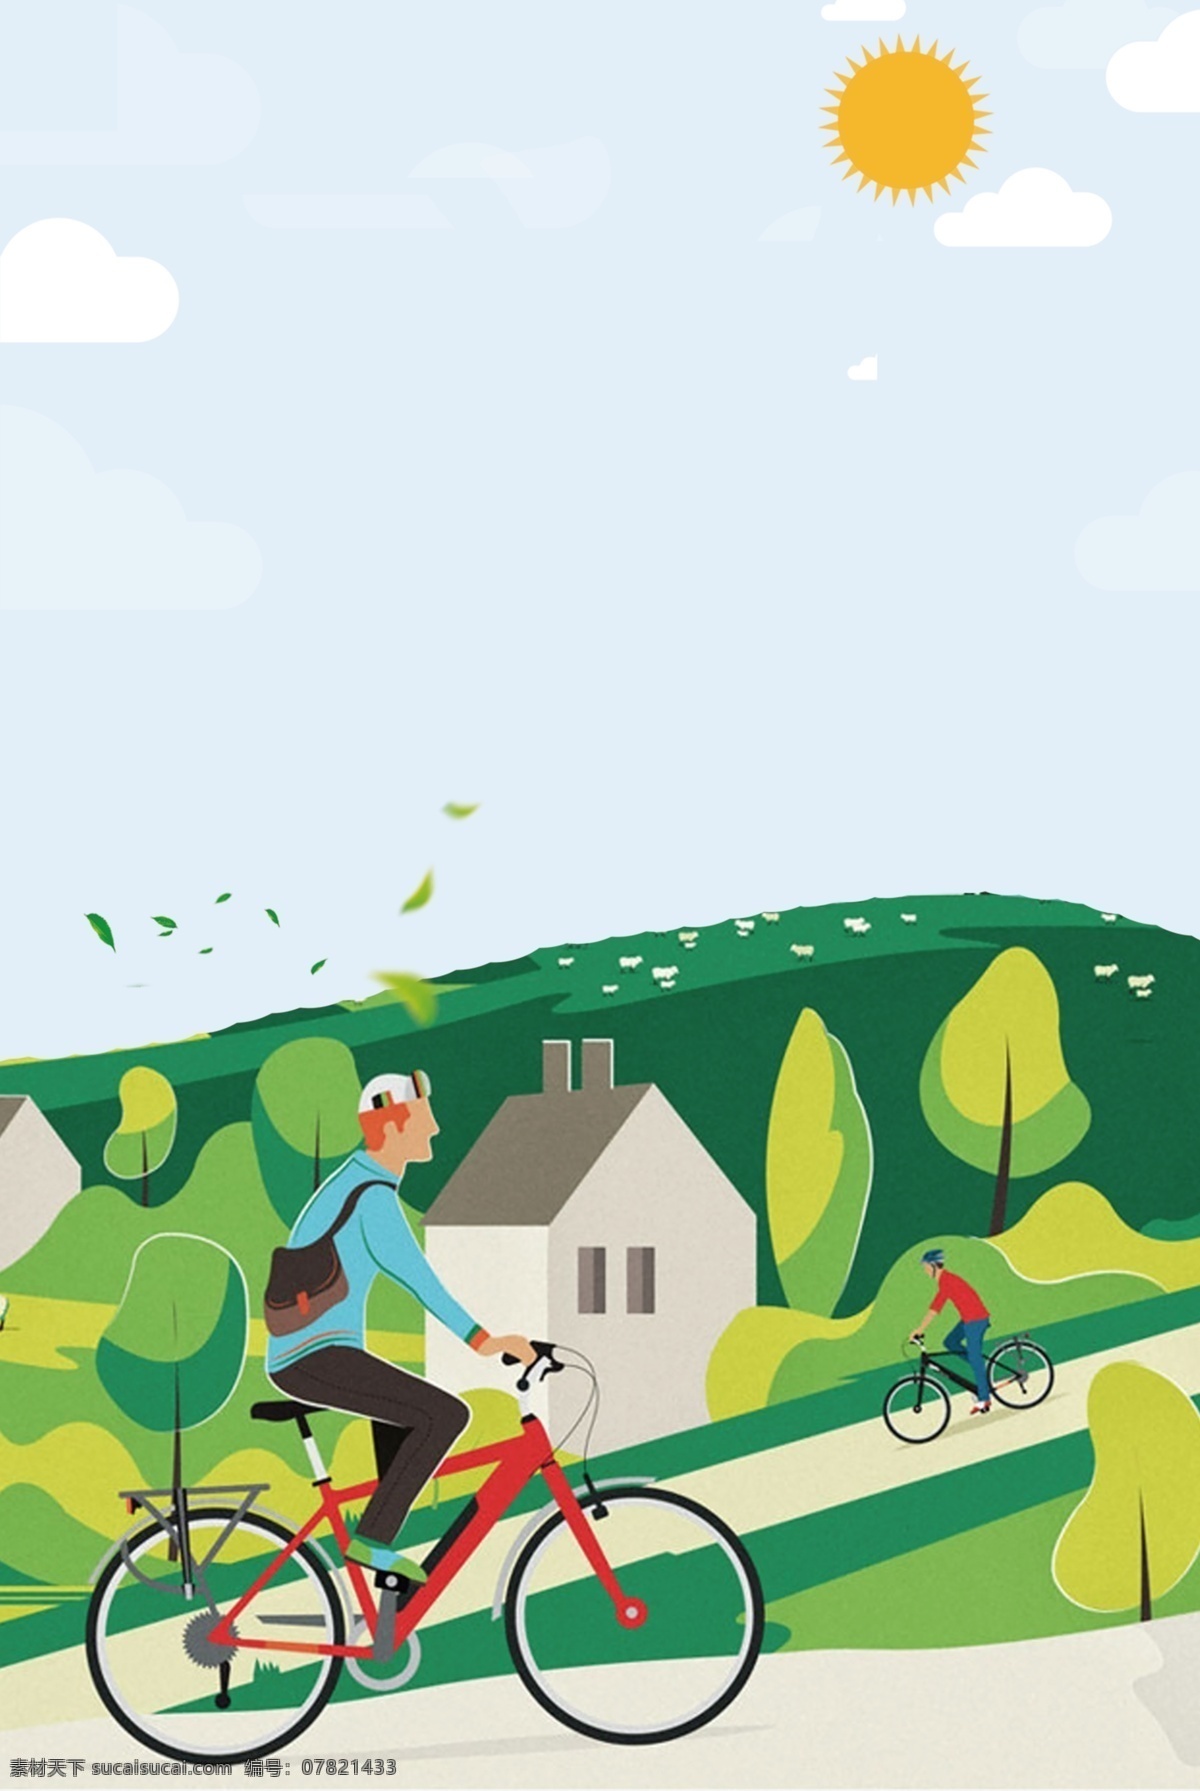 大气 世界 自行车赛 背景 自行车背景 车广告背景 通用背景 风景 手绘 自行车锦标赛